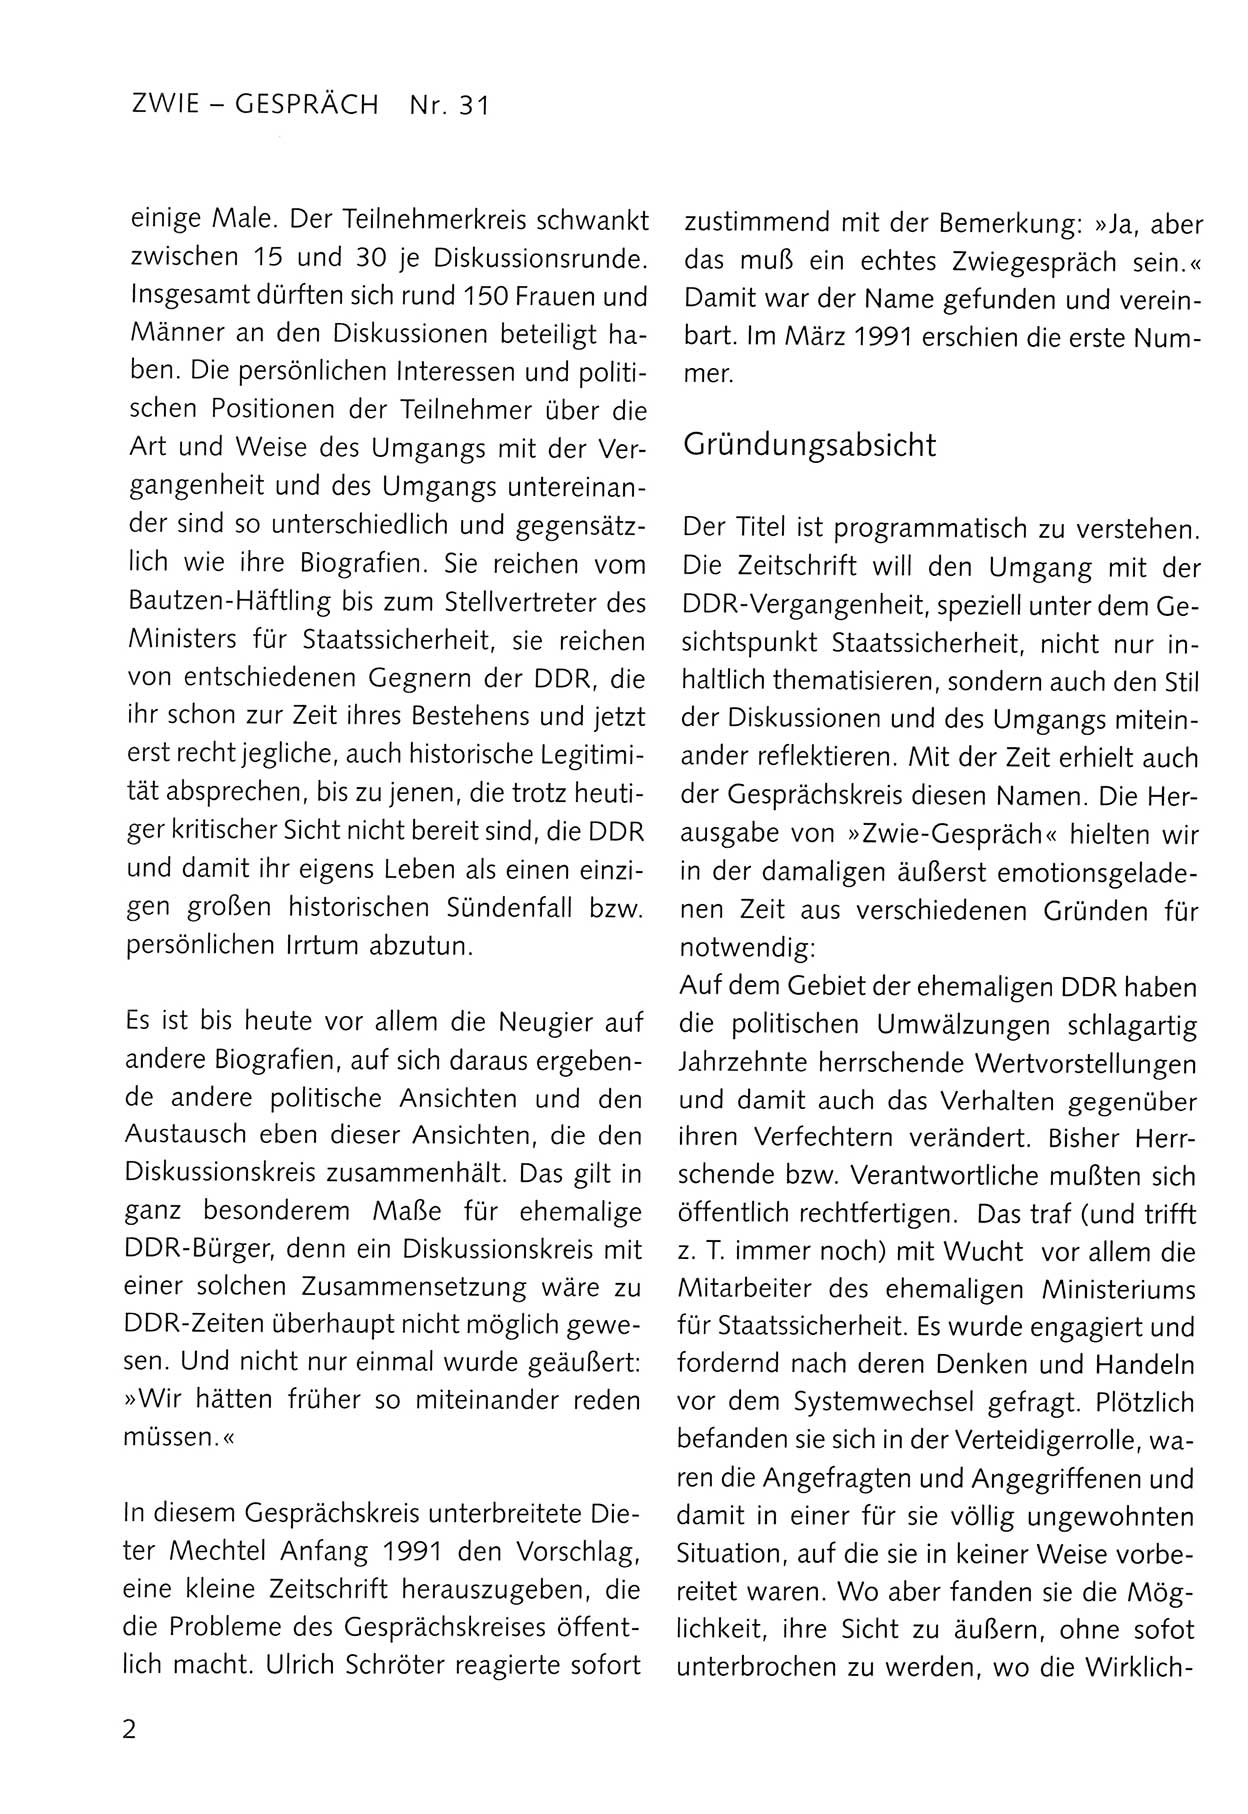 Zwie-Gespräch, Beiträge zum Umgang mit der Staatssicherheits-Vergangenheit [Deutsche Demokratische Republik (DDR)], Ausgabe Nr. 31, Berlin 1995, Seite 2 (Zwie-Gespr. Ausg. 31 1995, S. 2)